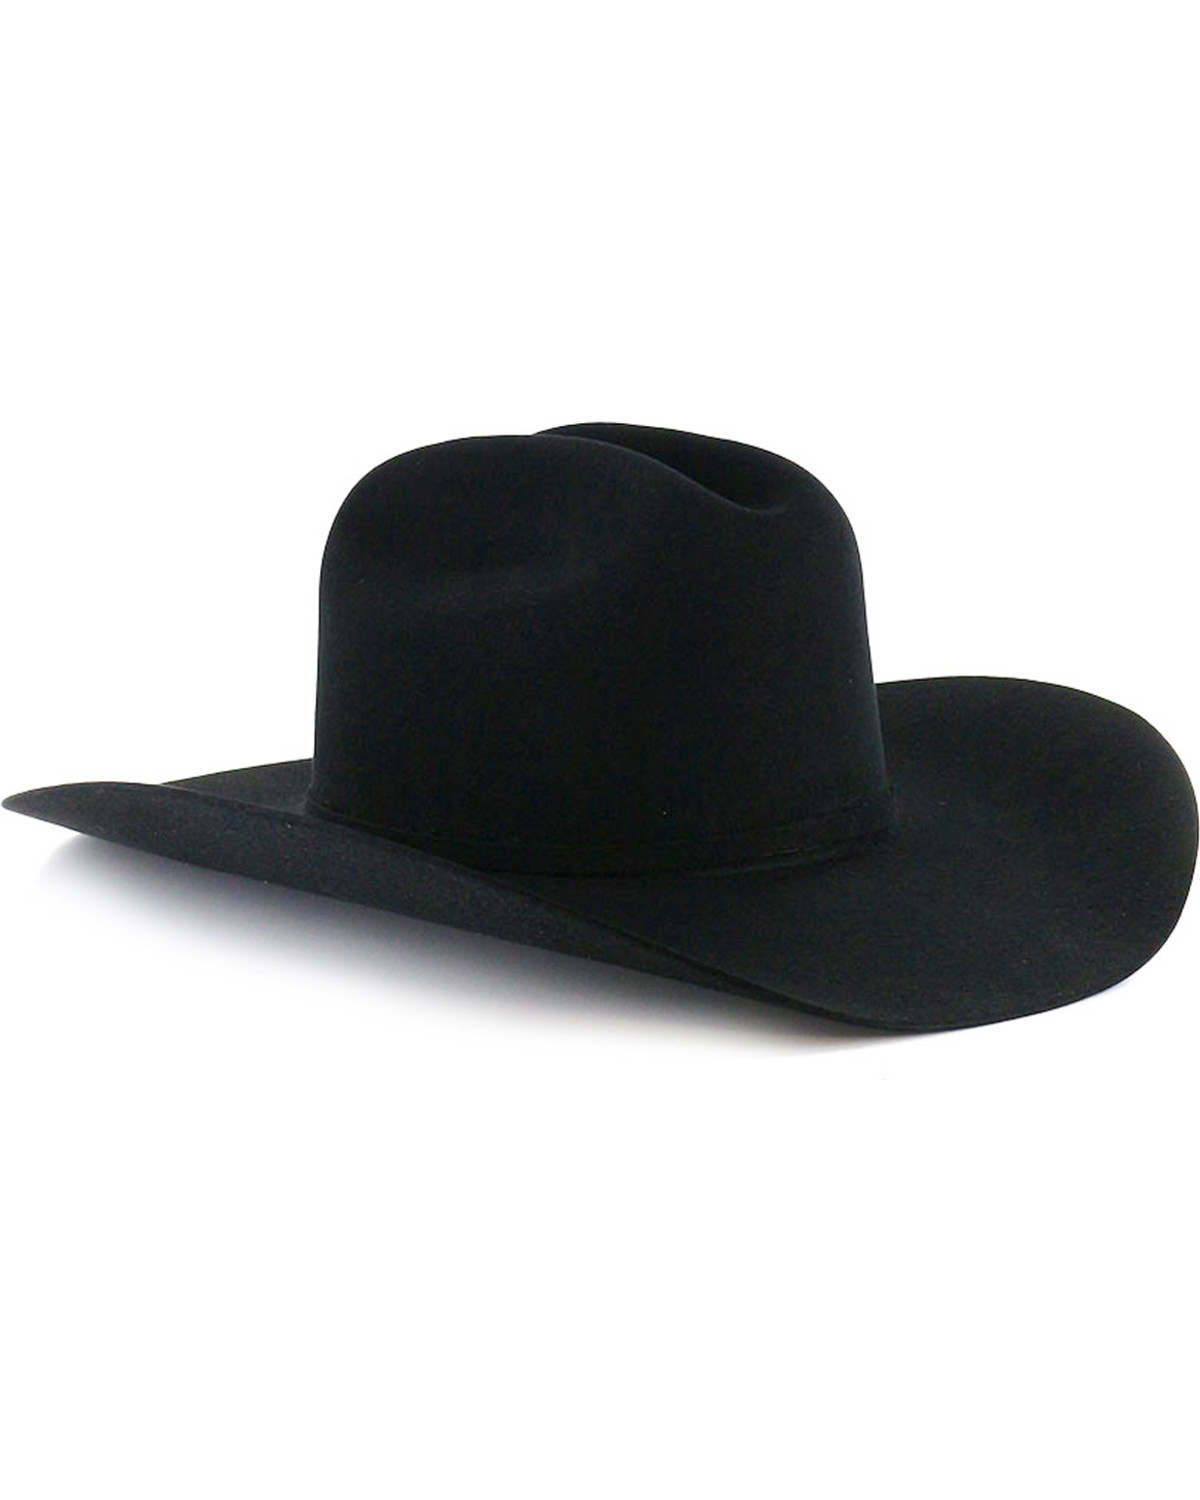 George Strait by Resistol Logan 6X Felt Cowboy Hat